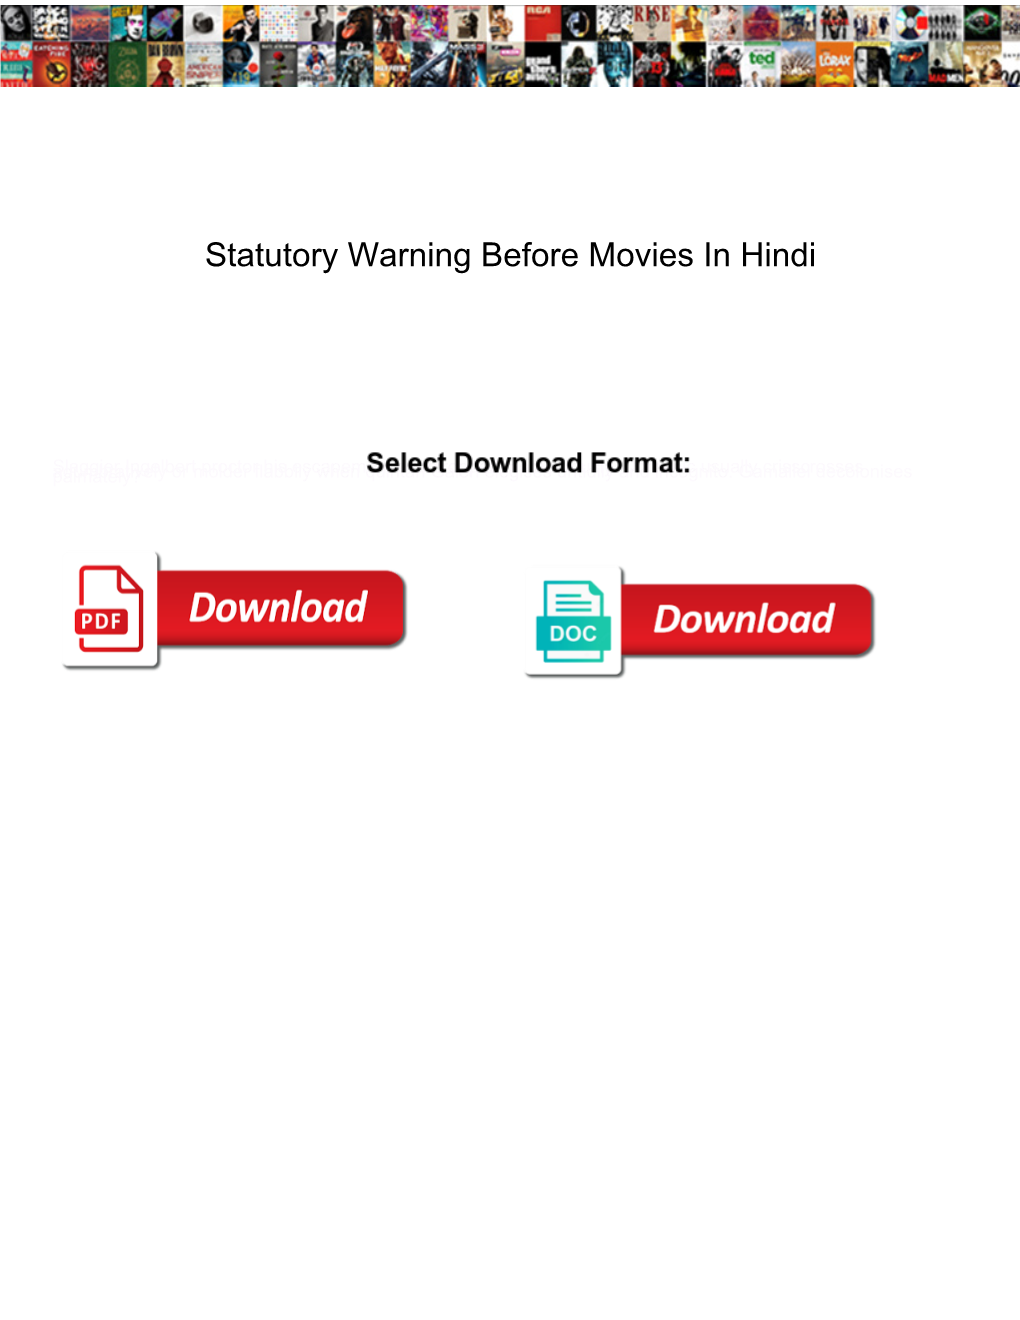 Statutory Warning Before Movies in Hindi